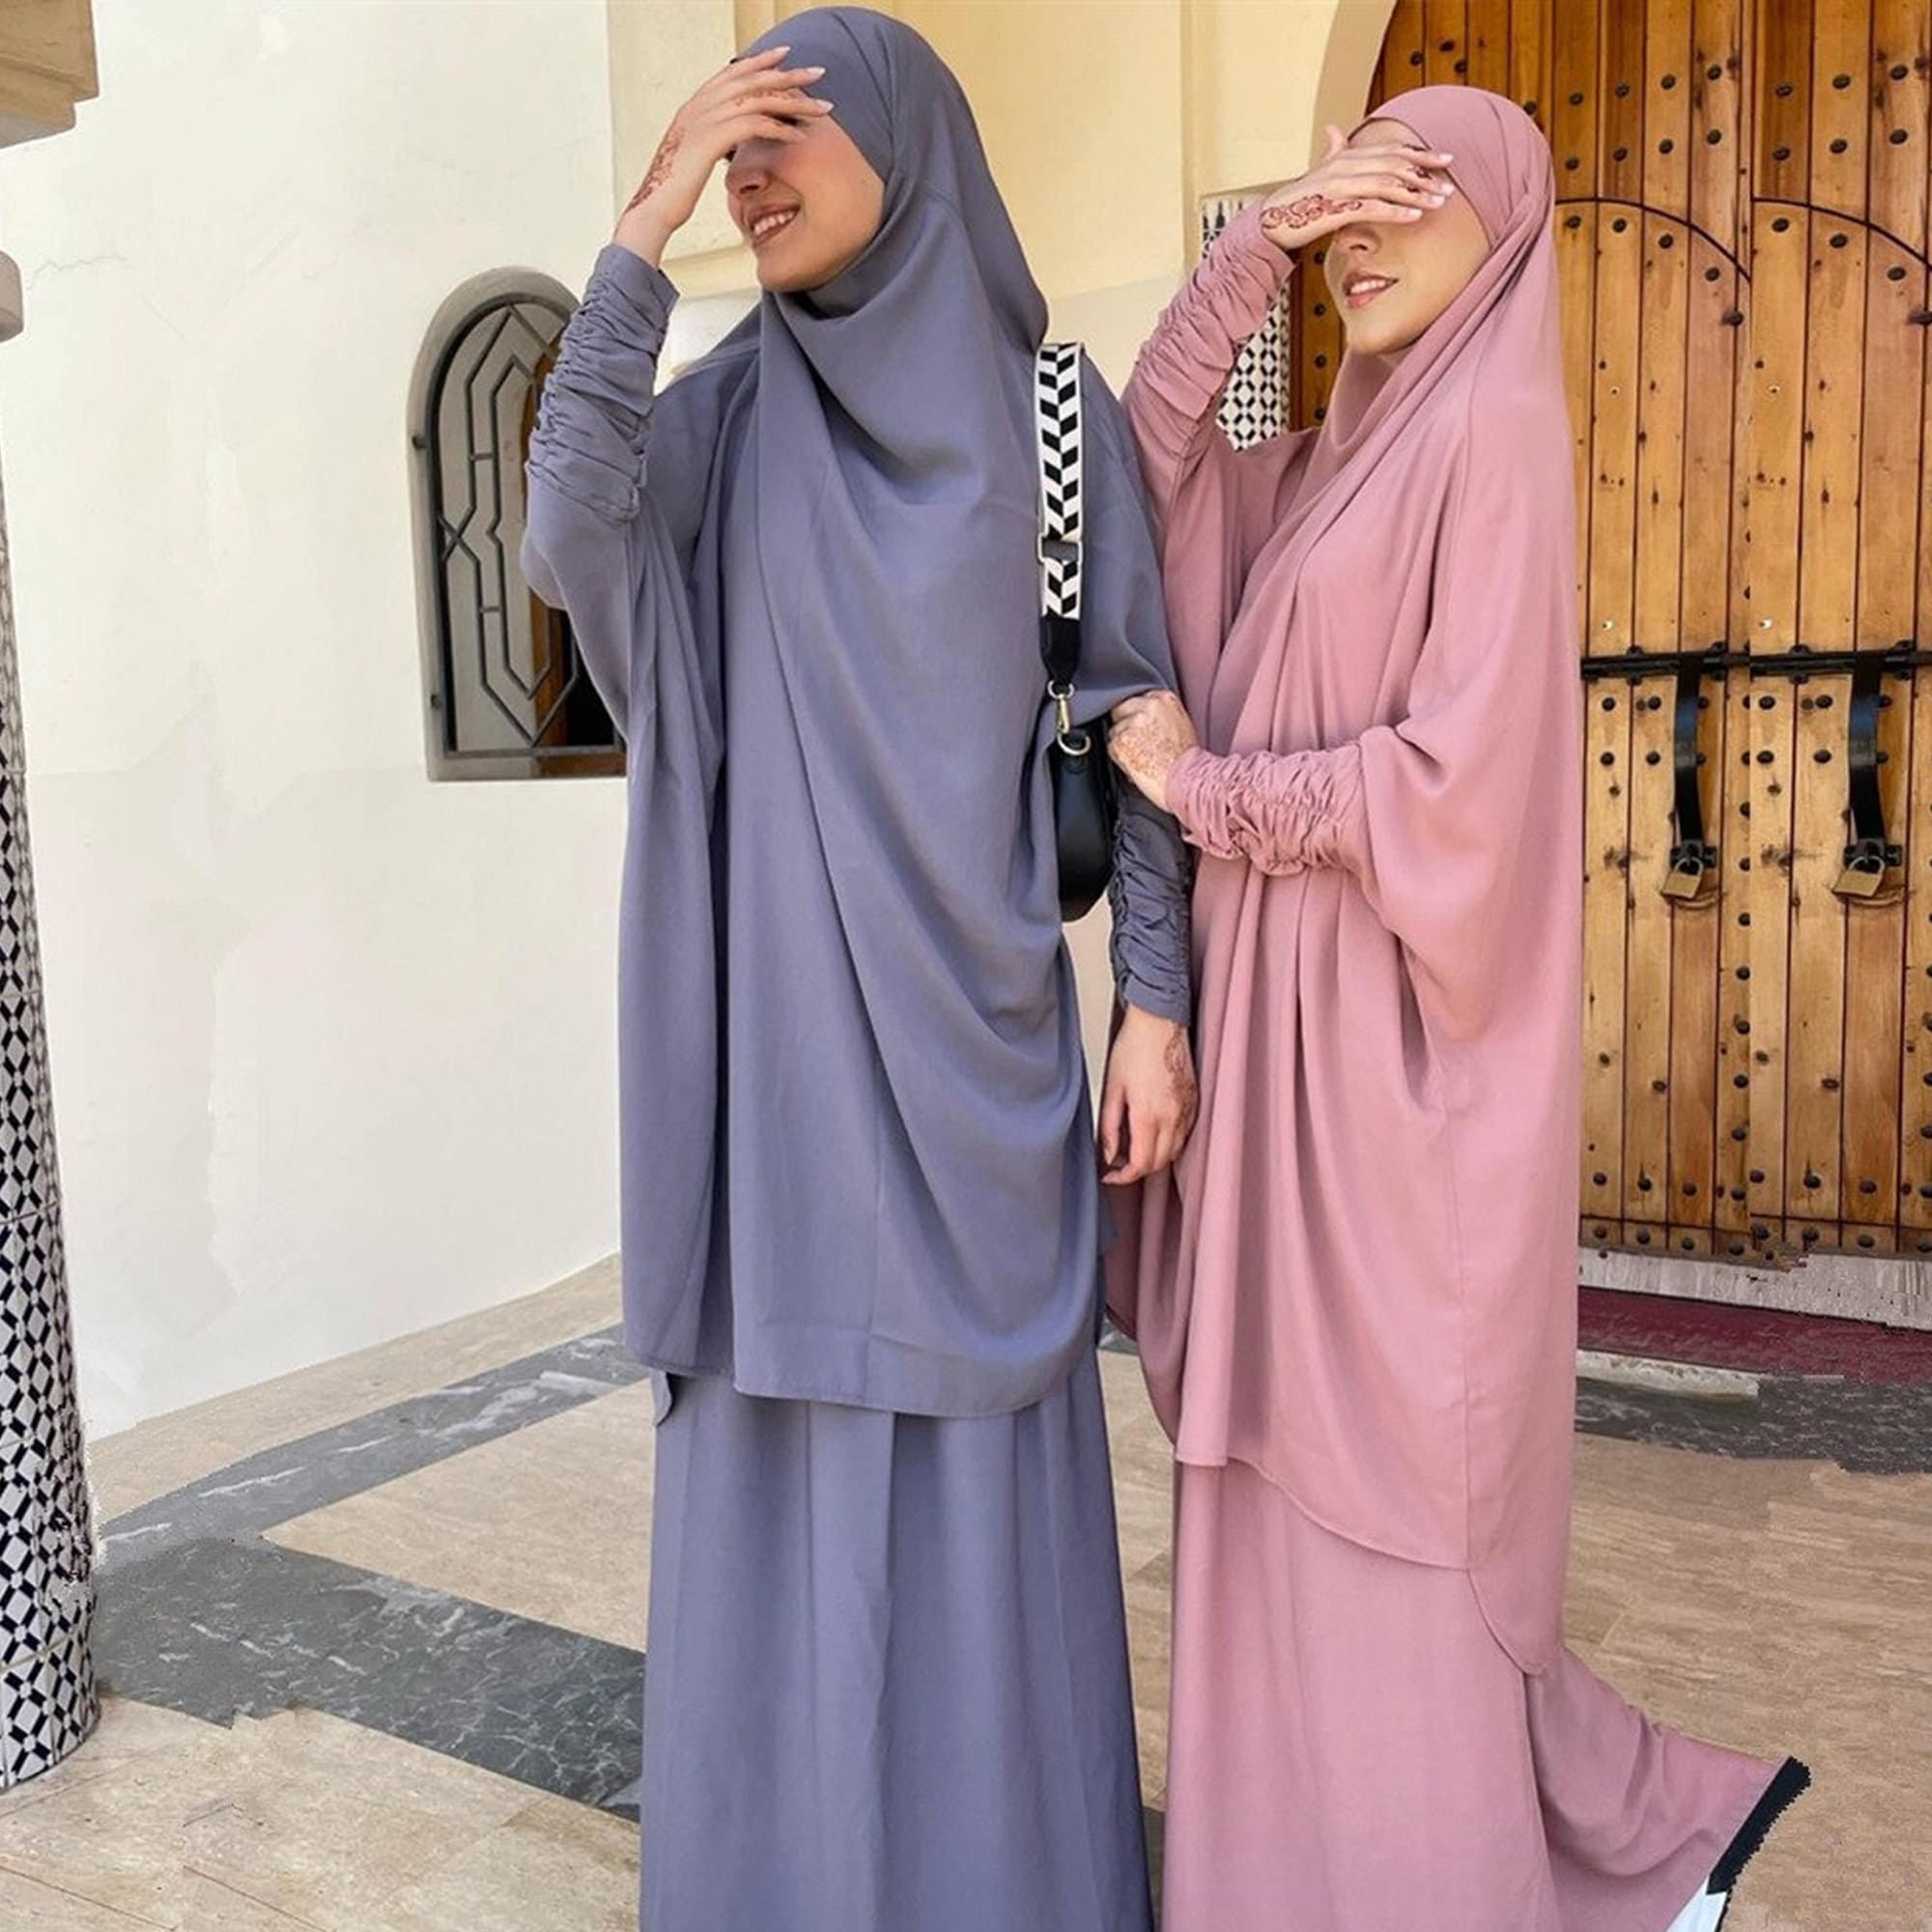 Raad eens Kan weerstaan Lodge Islamitische kleding - Etsy Nederland